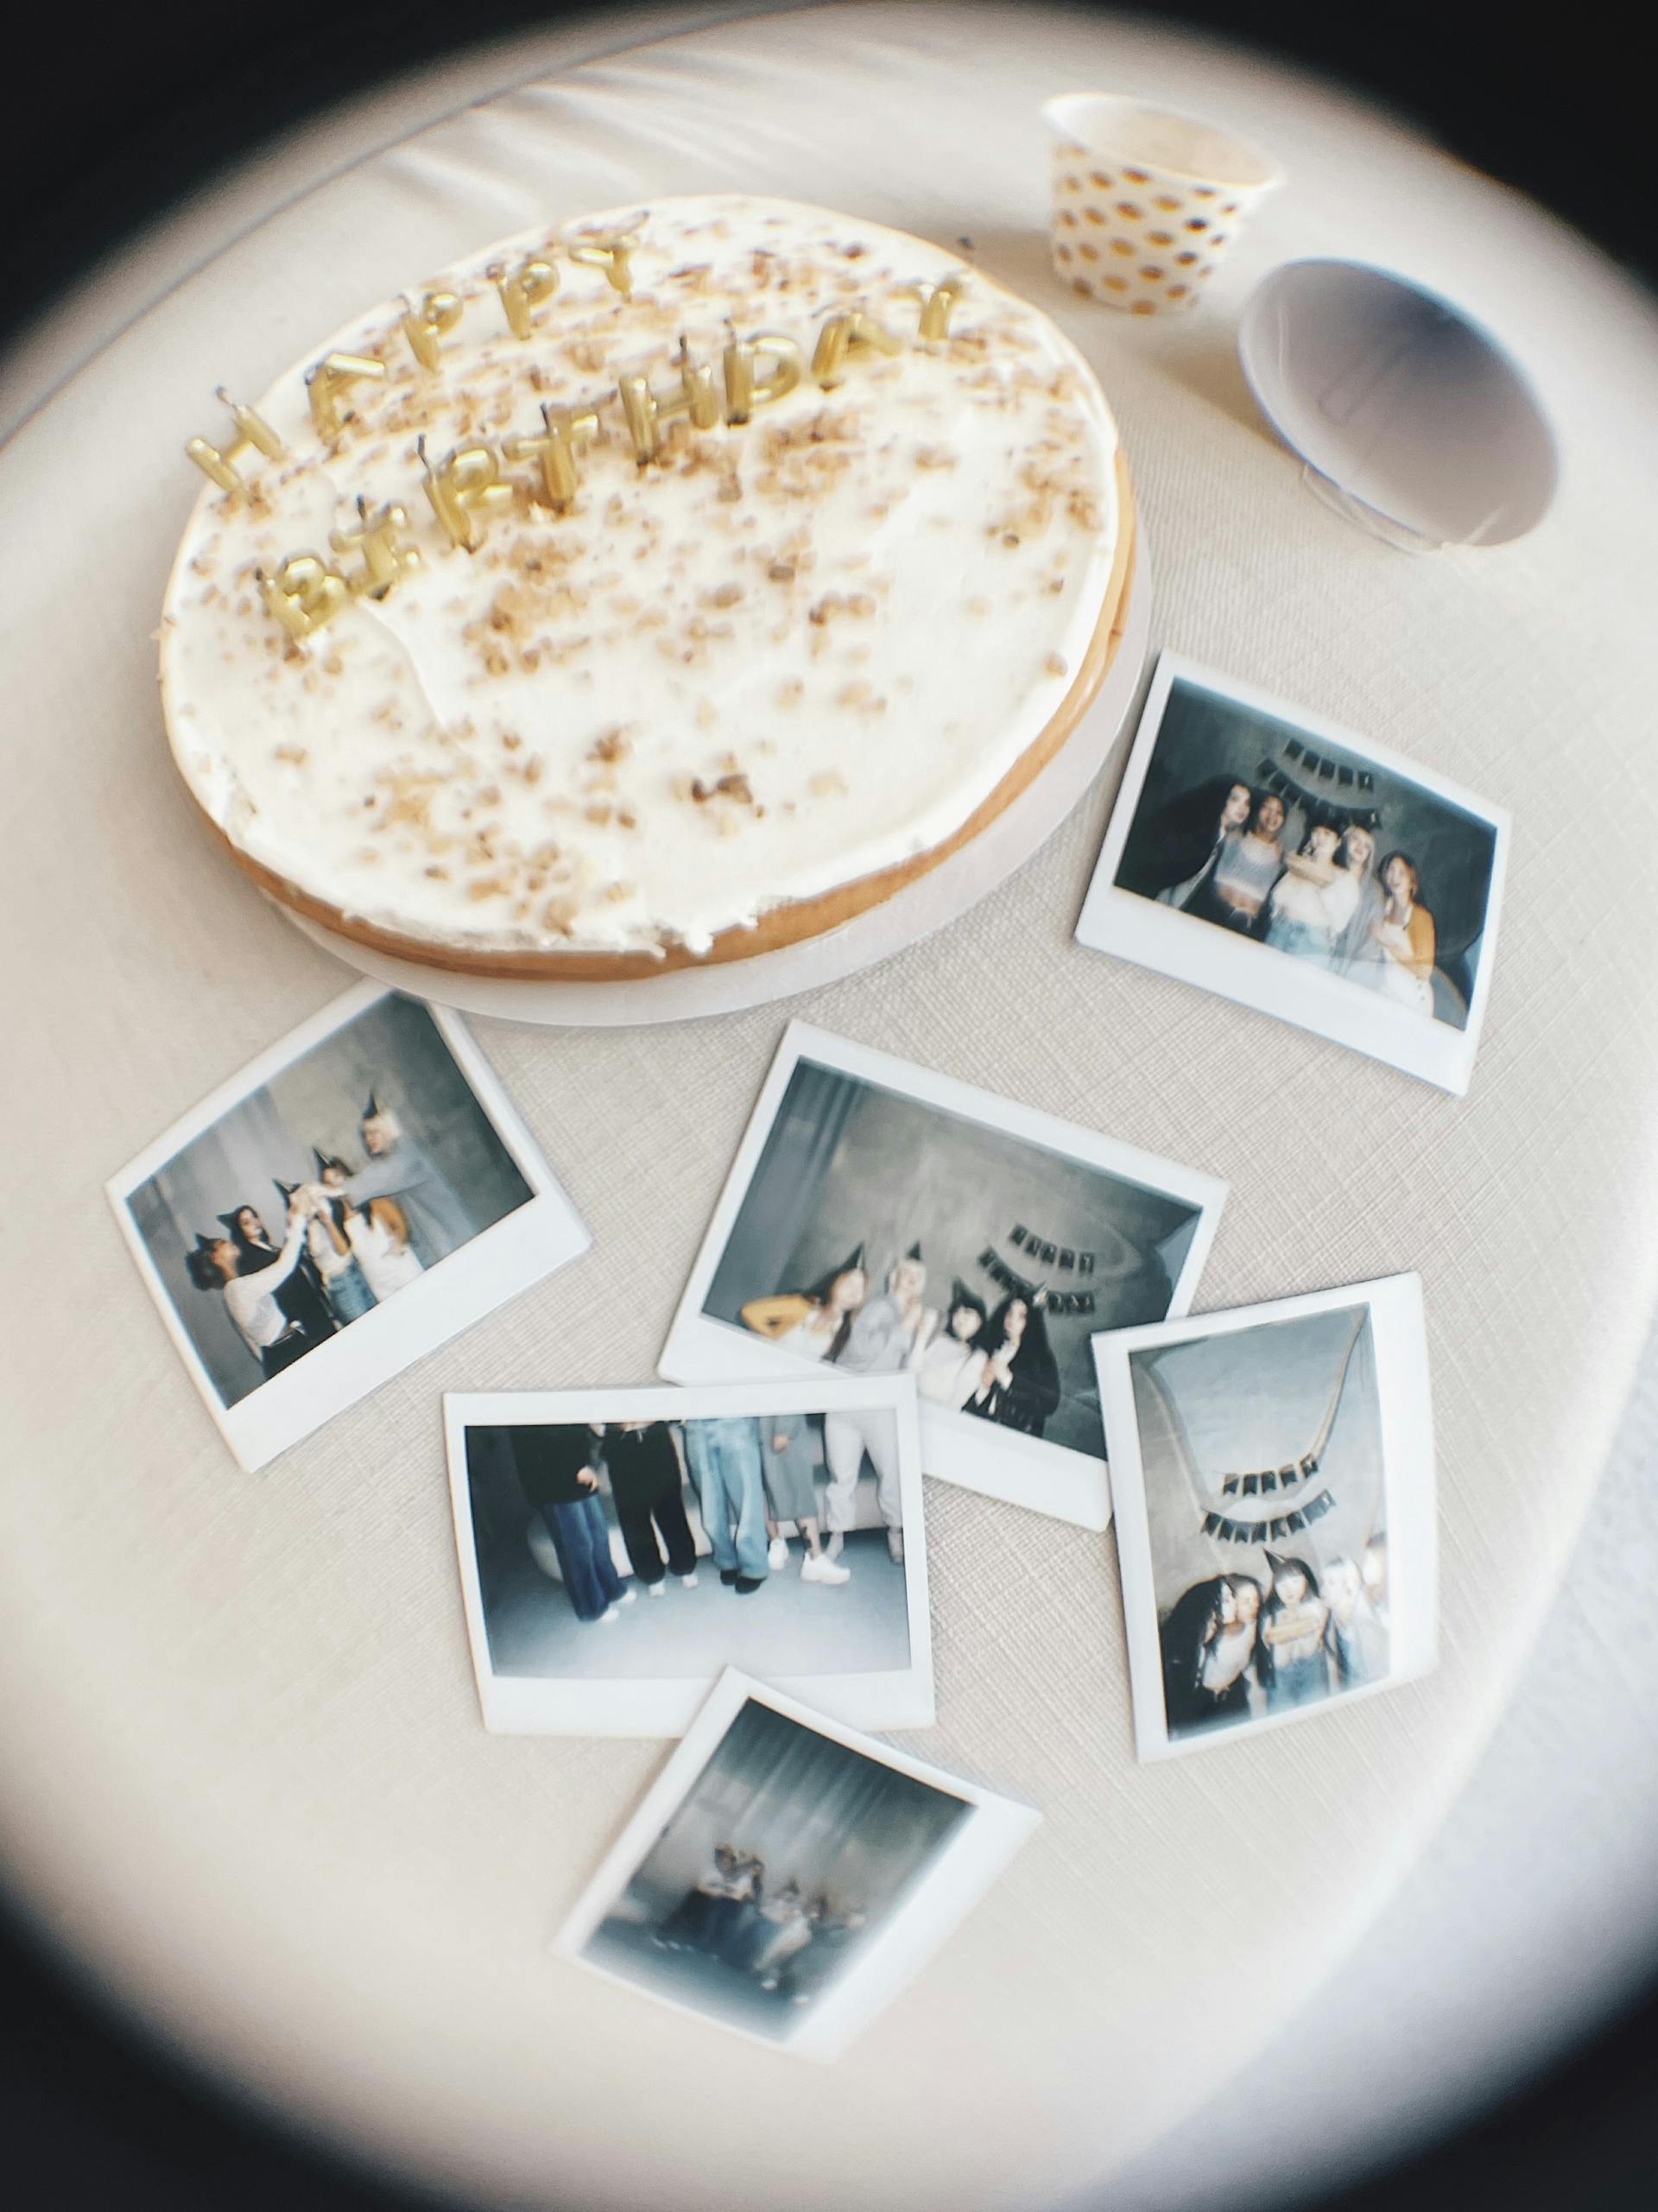 Photographies couchées à côté d'un gâteau d'anniversaire | Source : Pexels